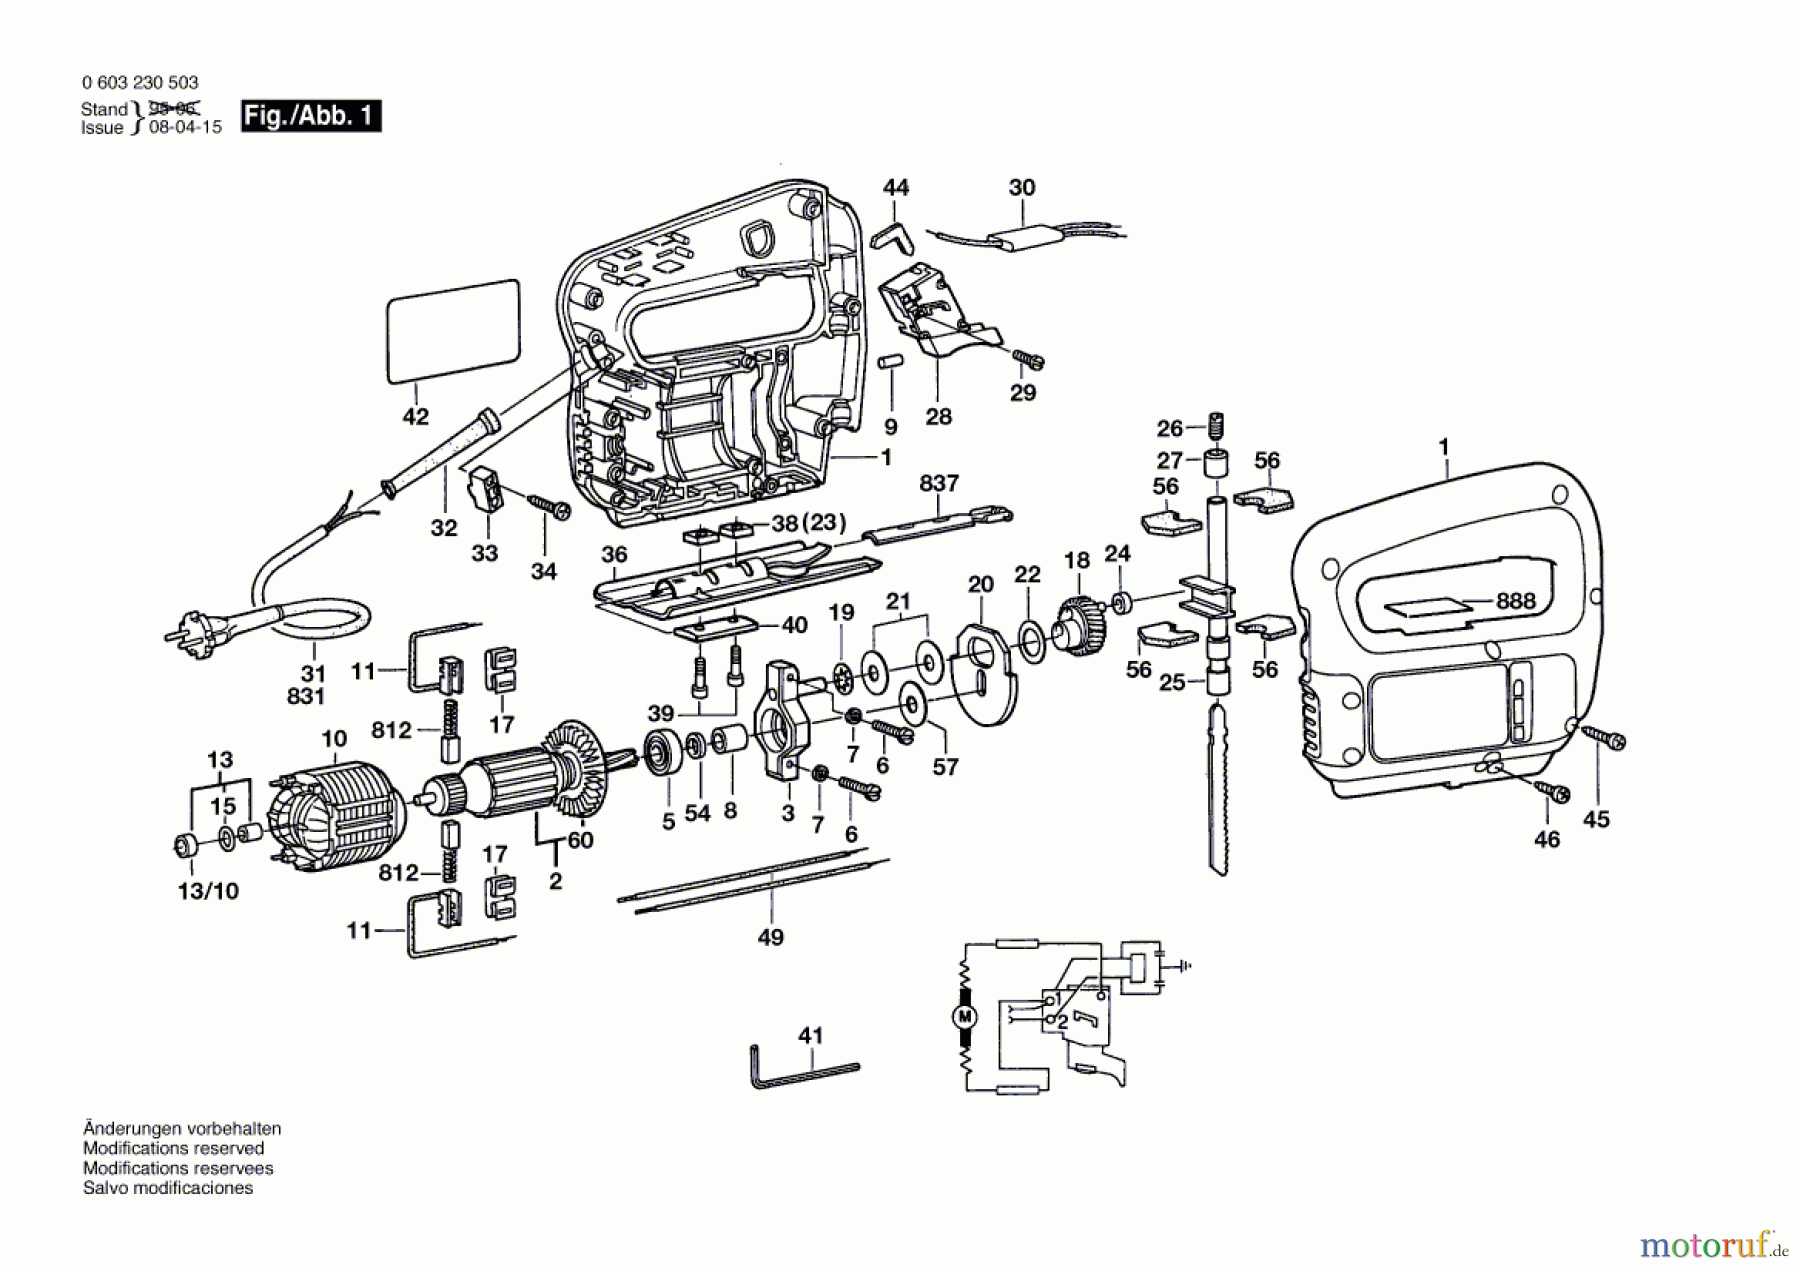  Bosch Werkzeug Gw-Stichsäge ST 350 Seite 1